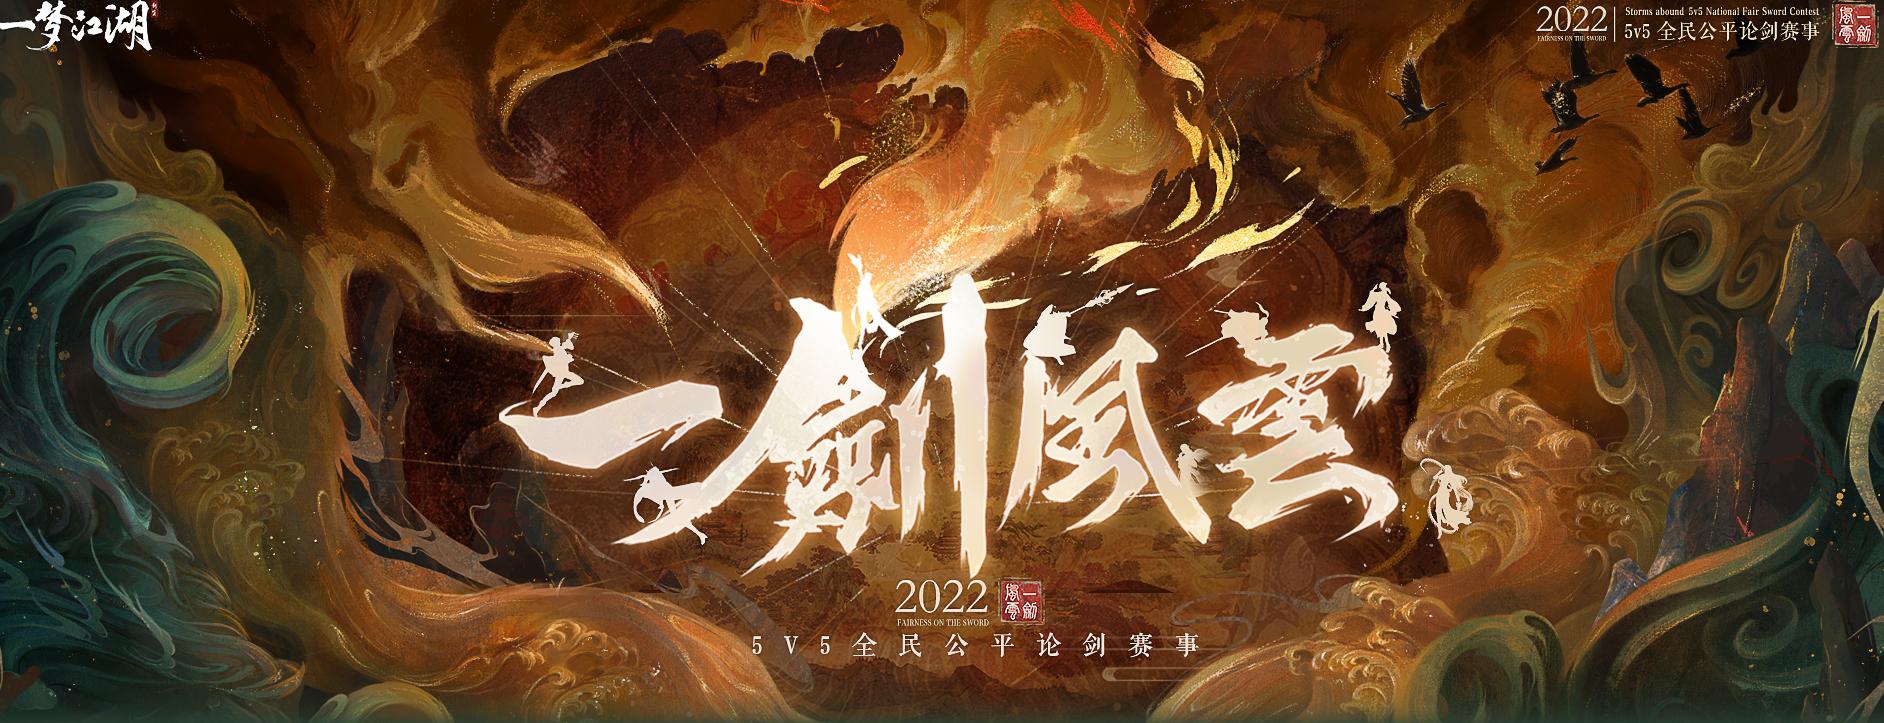 《一梦江湖》一剑风云2022·5V5全民公平论剑赛 16强比赛精彩回顾